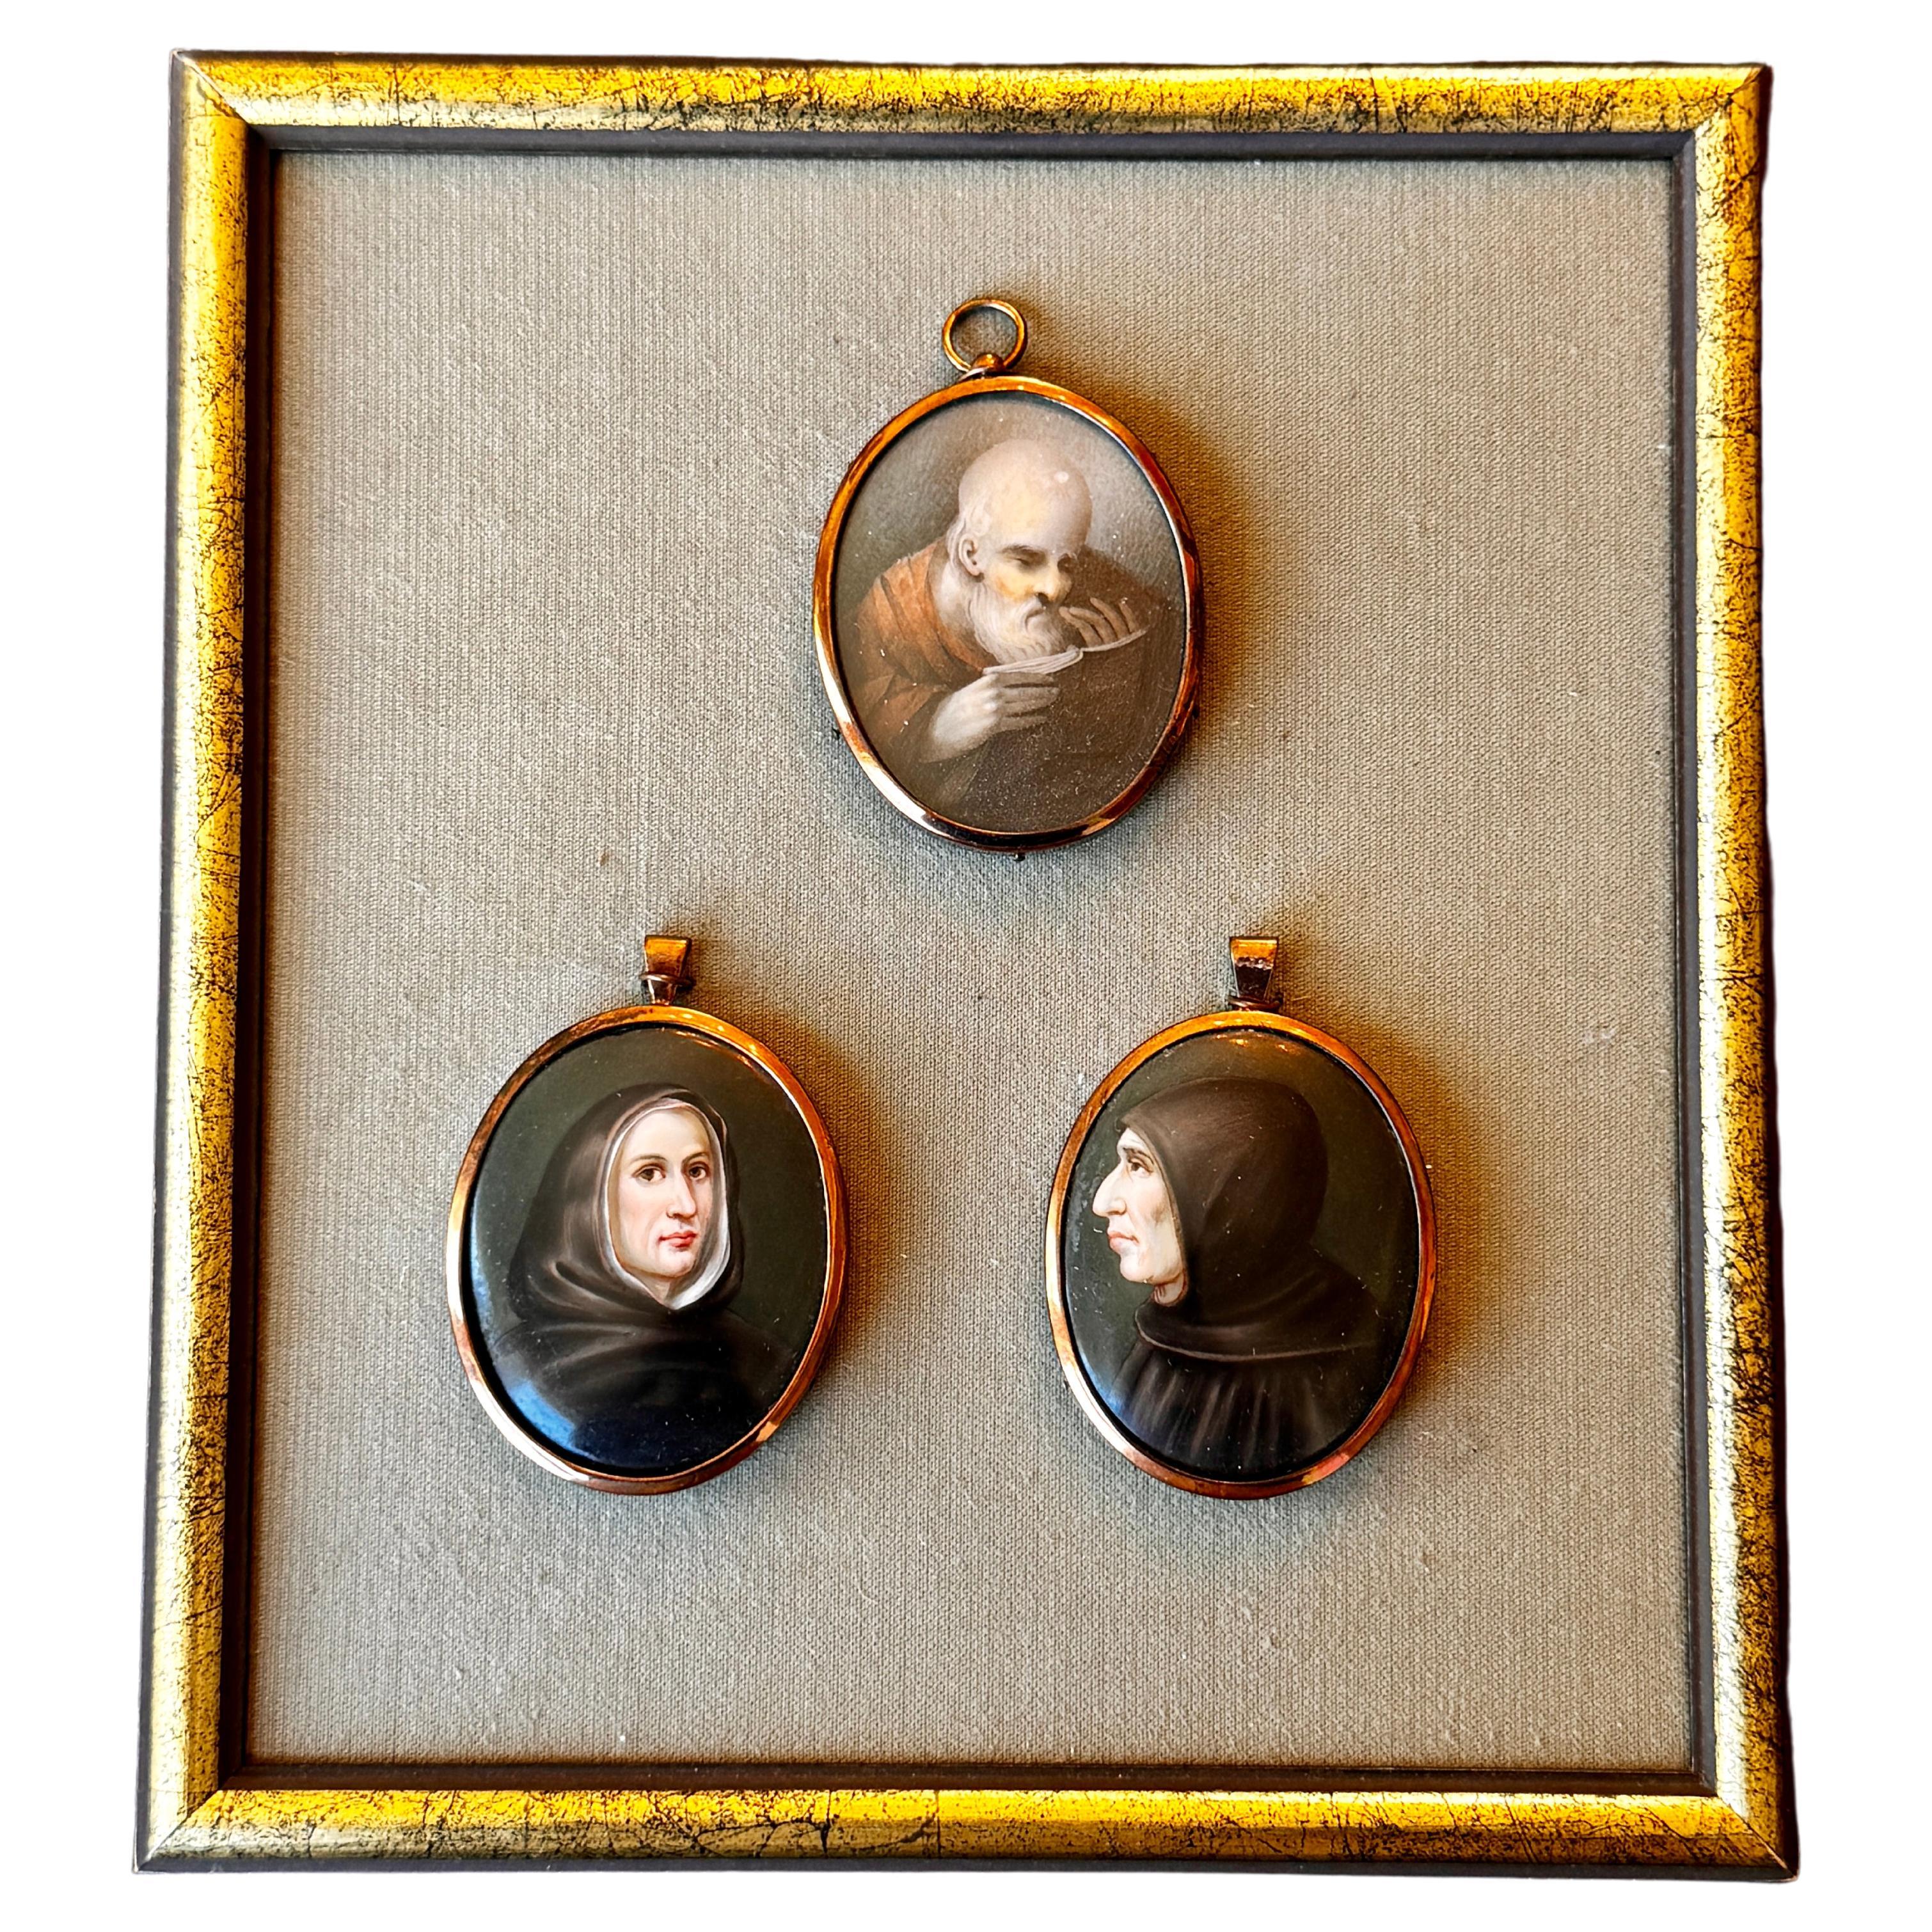 Gerahmte Porzellan-Miniaturen von Monken aus dem 19. Jahrhundert, handbemalt 